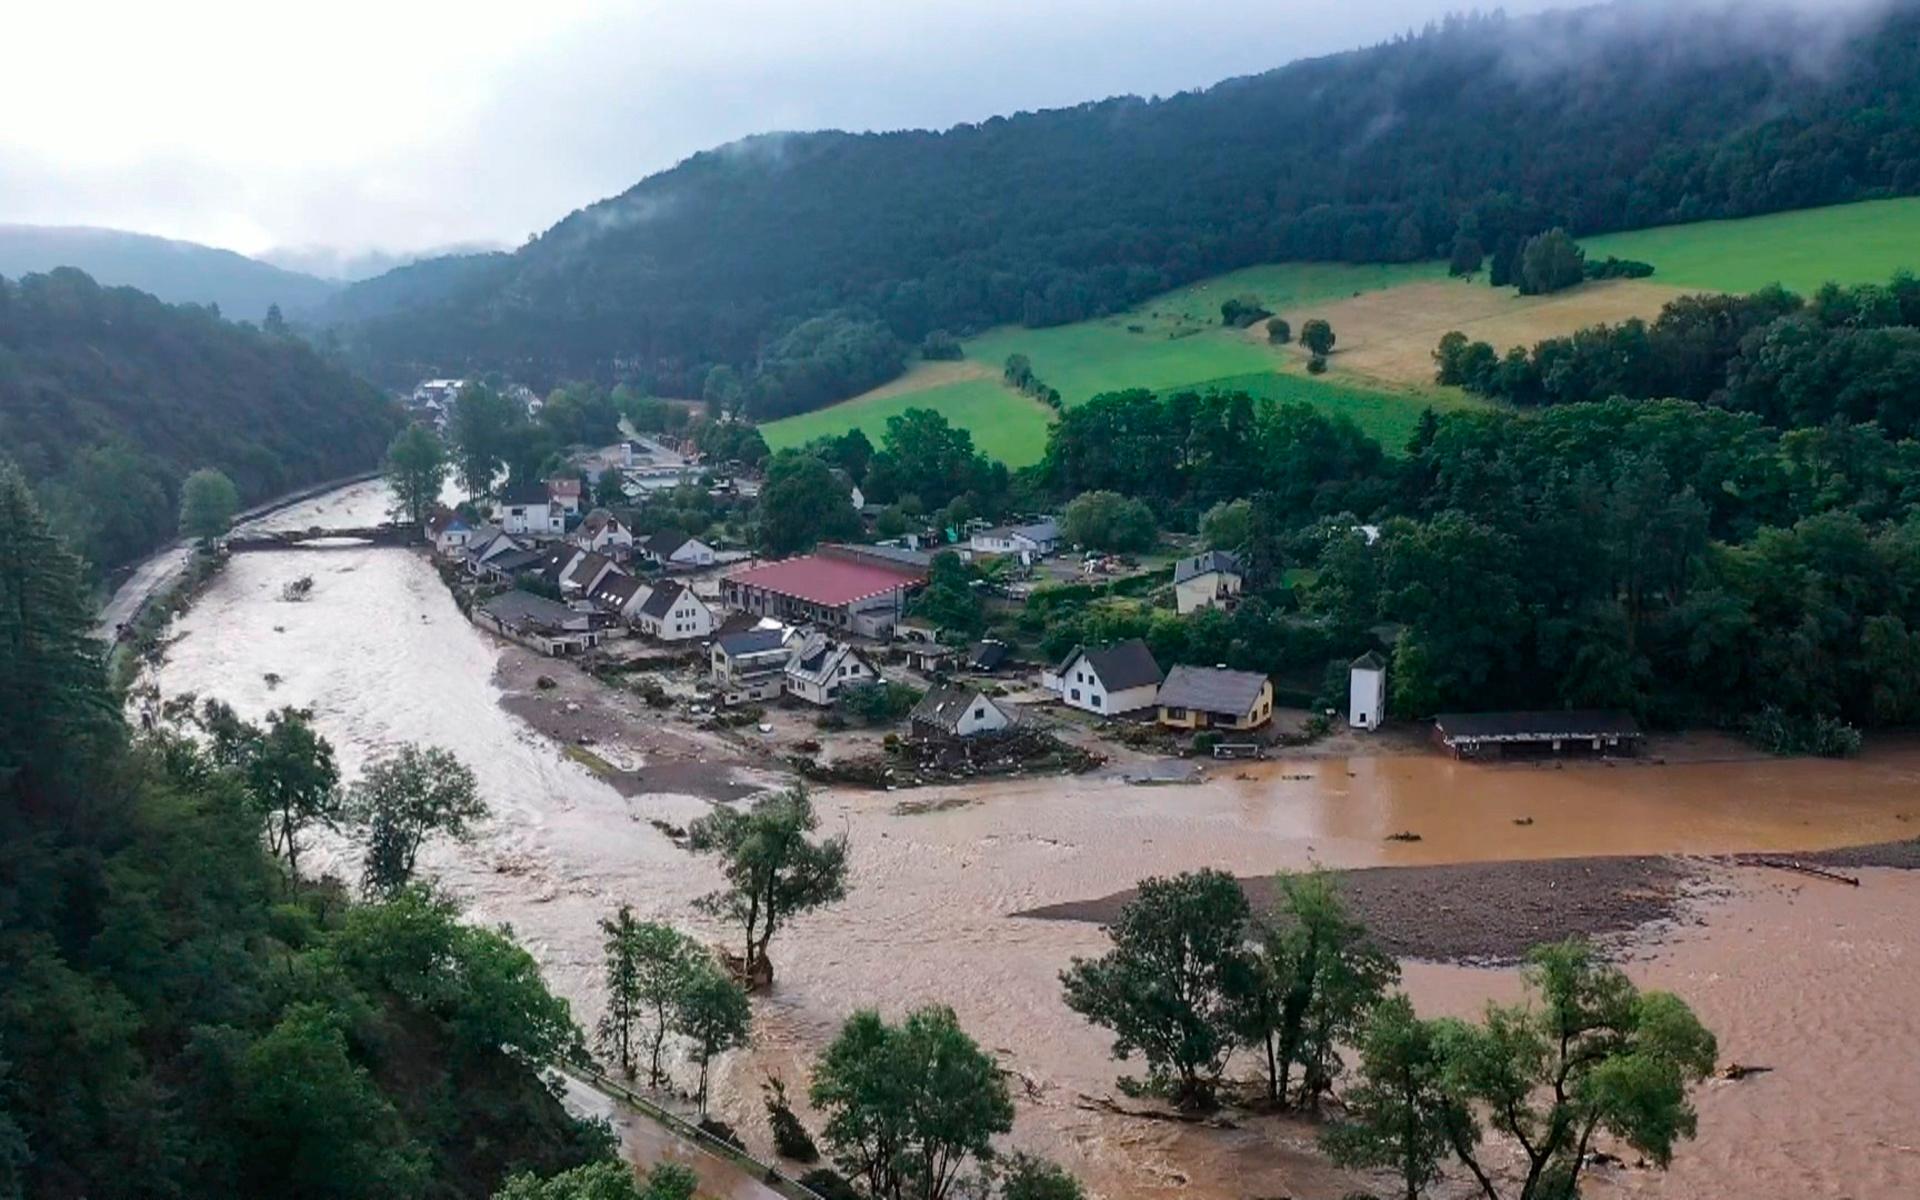 Drönarbild som visar situationen vid floden Ahr vid byn Eifel i västra Tyskland.